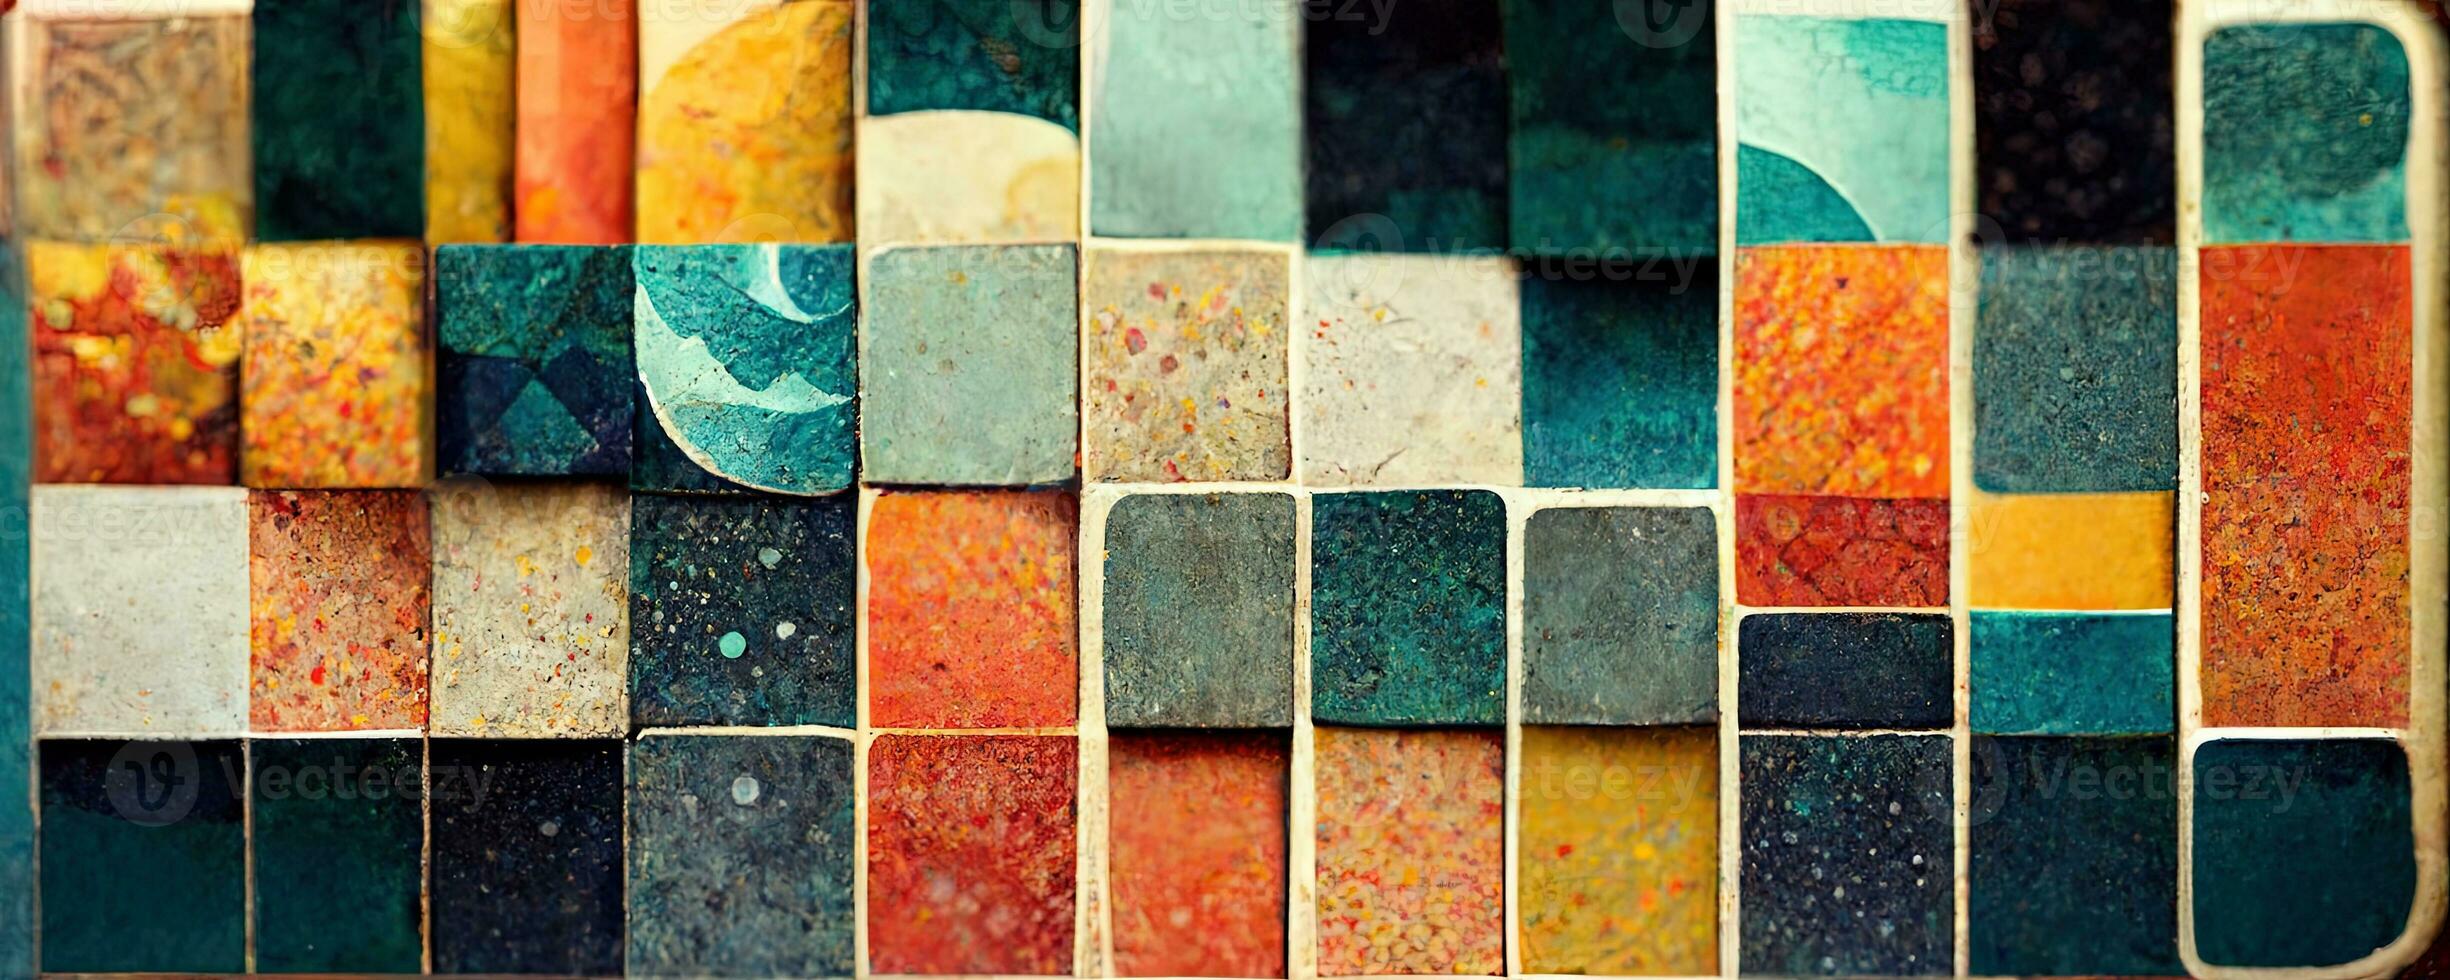 künstlerisch bunt Mosaik Muster. Collage zeitgenössisch drucken mit modisch dekorativ Mosaik Muster mit anders Farben, modern Kunst. Banner Konzept foto